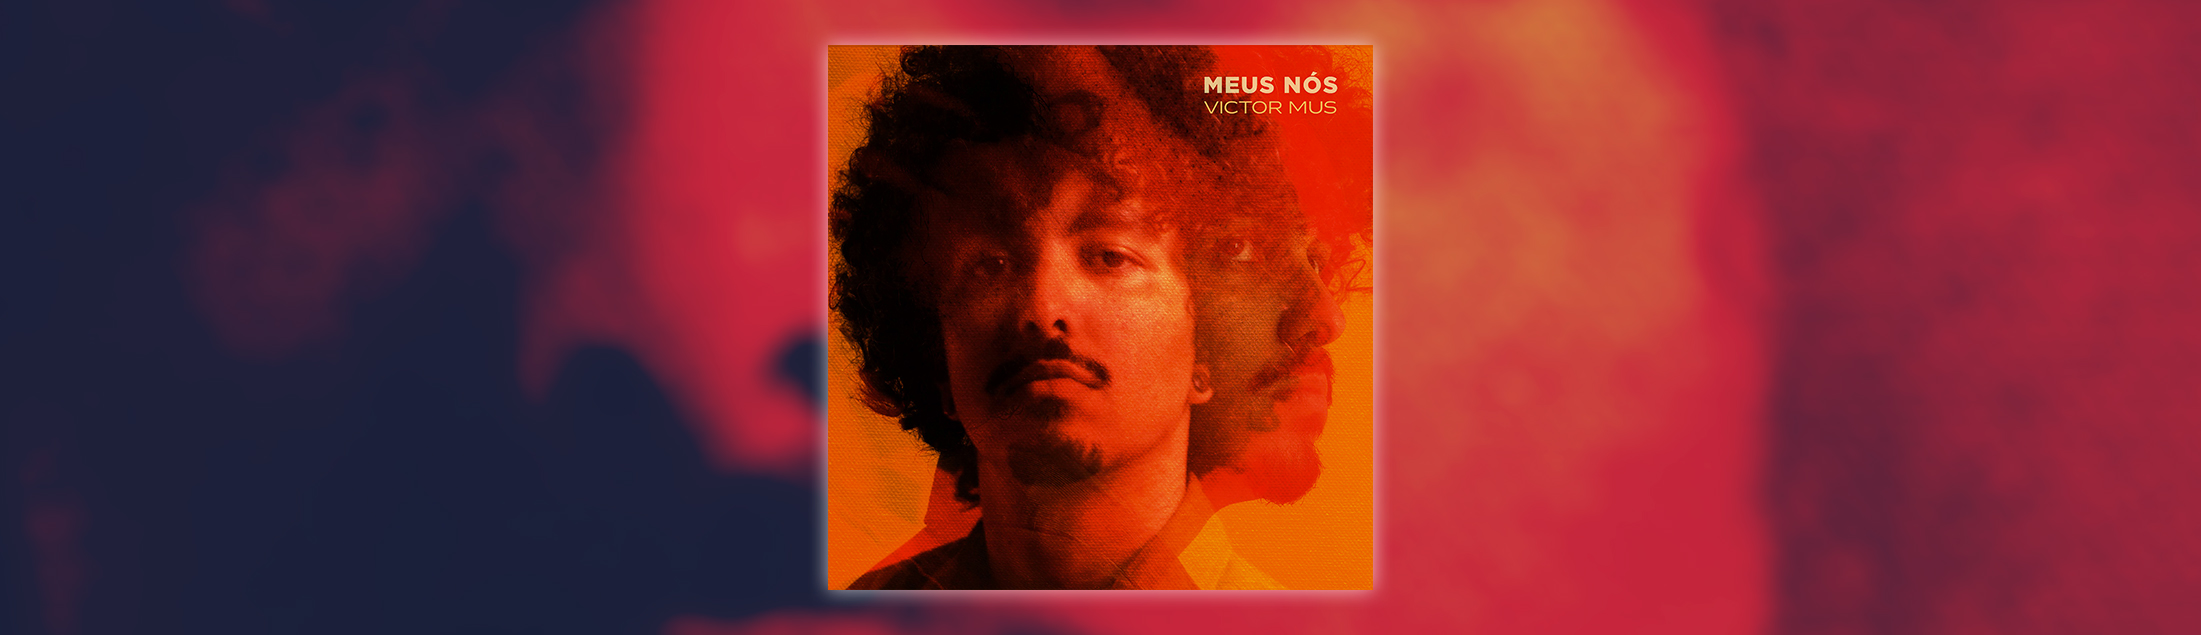 'Meus Nós': Victor Mus costura novas sonoridades em EP plural e diverso